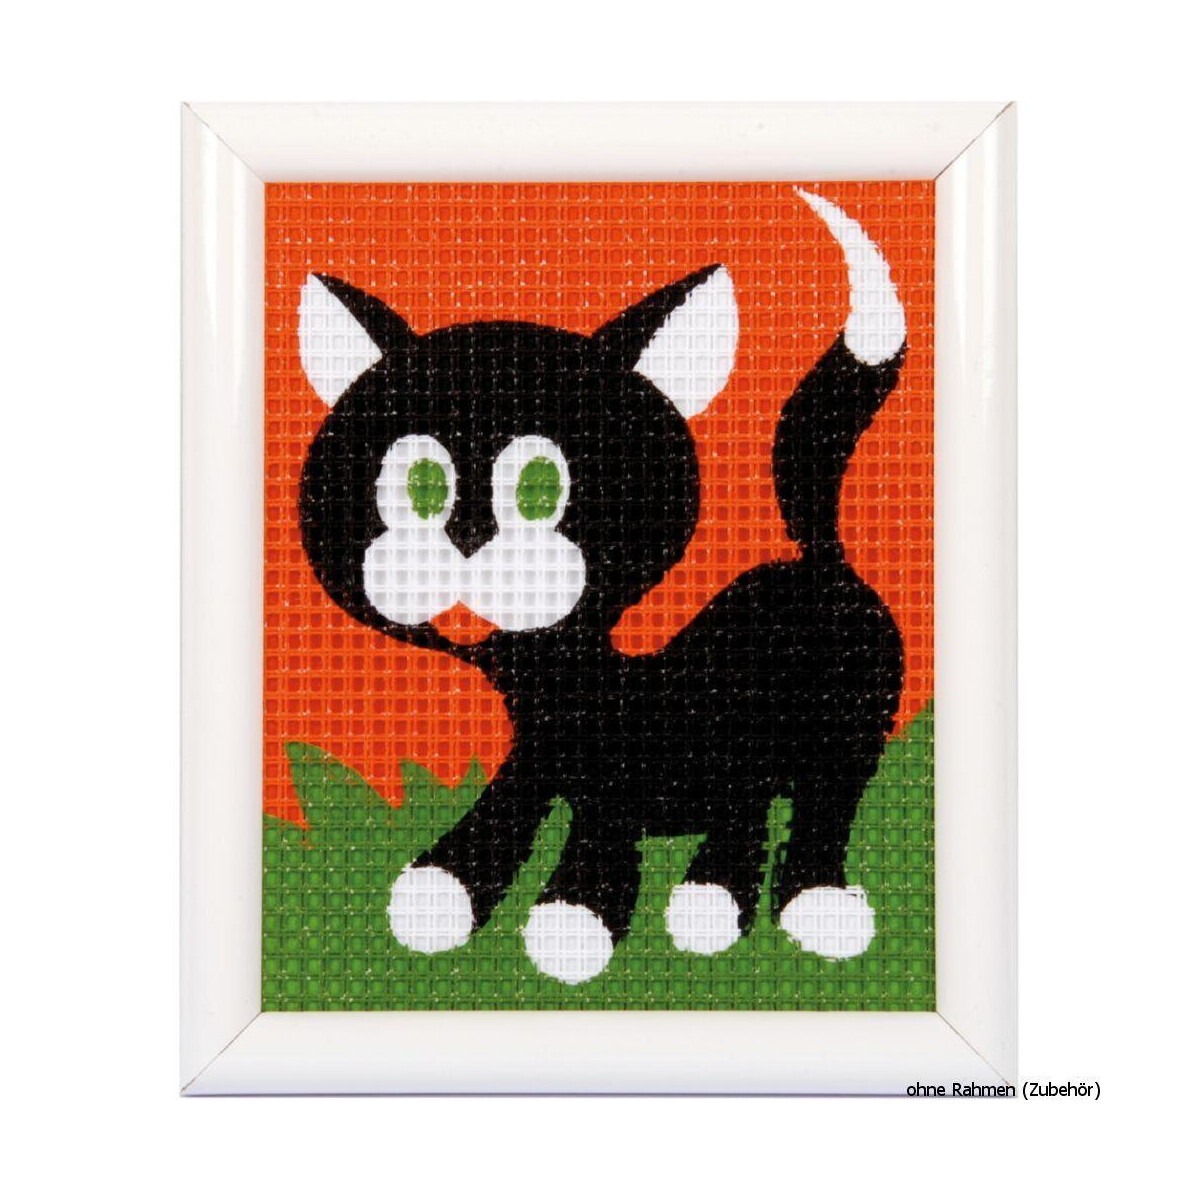 Набор для вышивания Vervaco "Черный кот",...